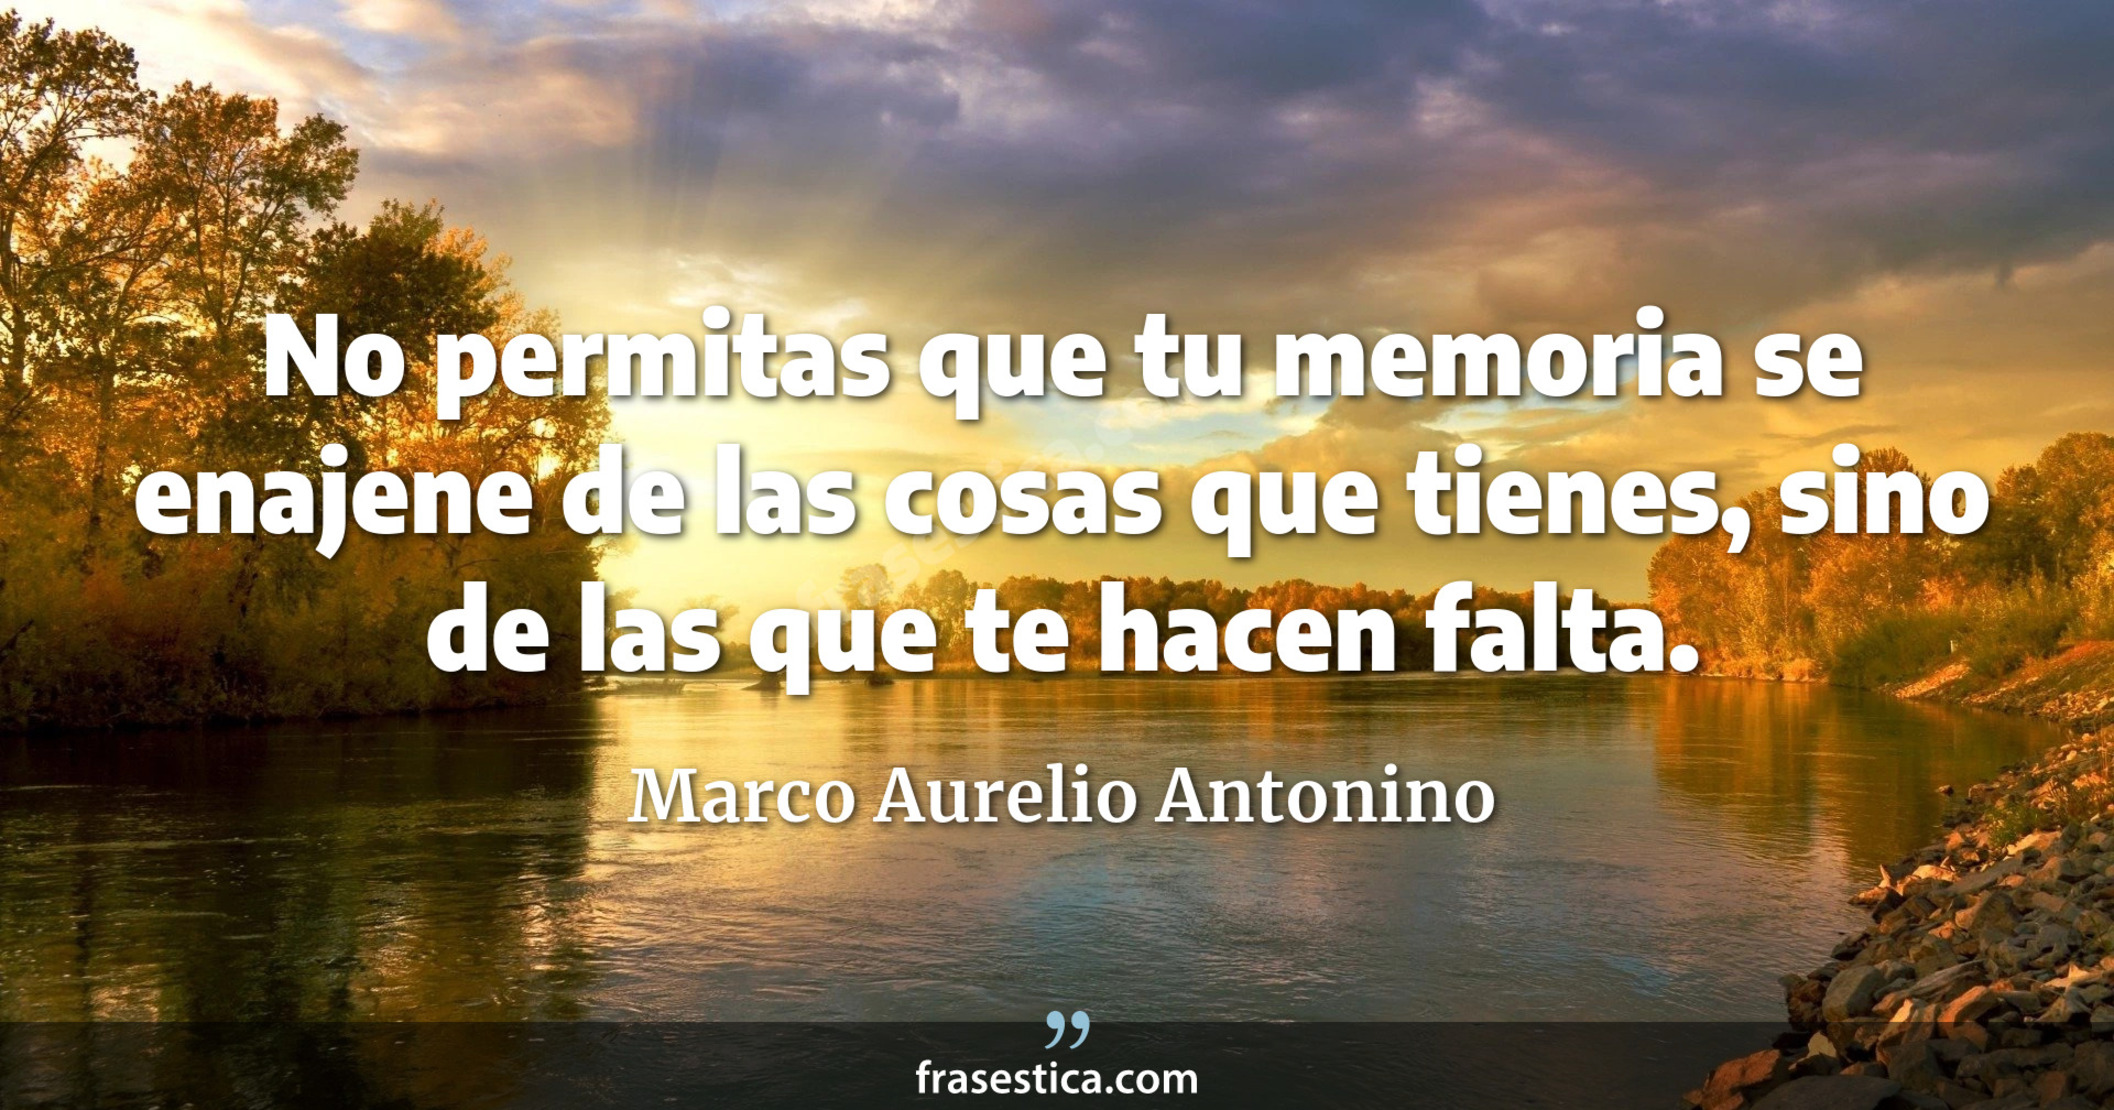 No permitas que tu memoria se enajene de las cosas que tienes, sino de las que te hacen falta. - Marco Aurelio Antonino